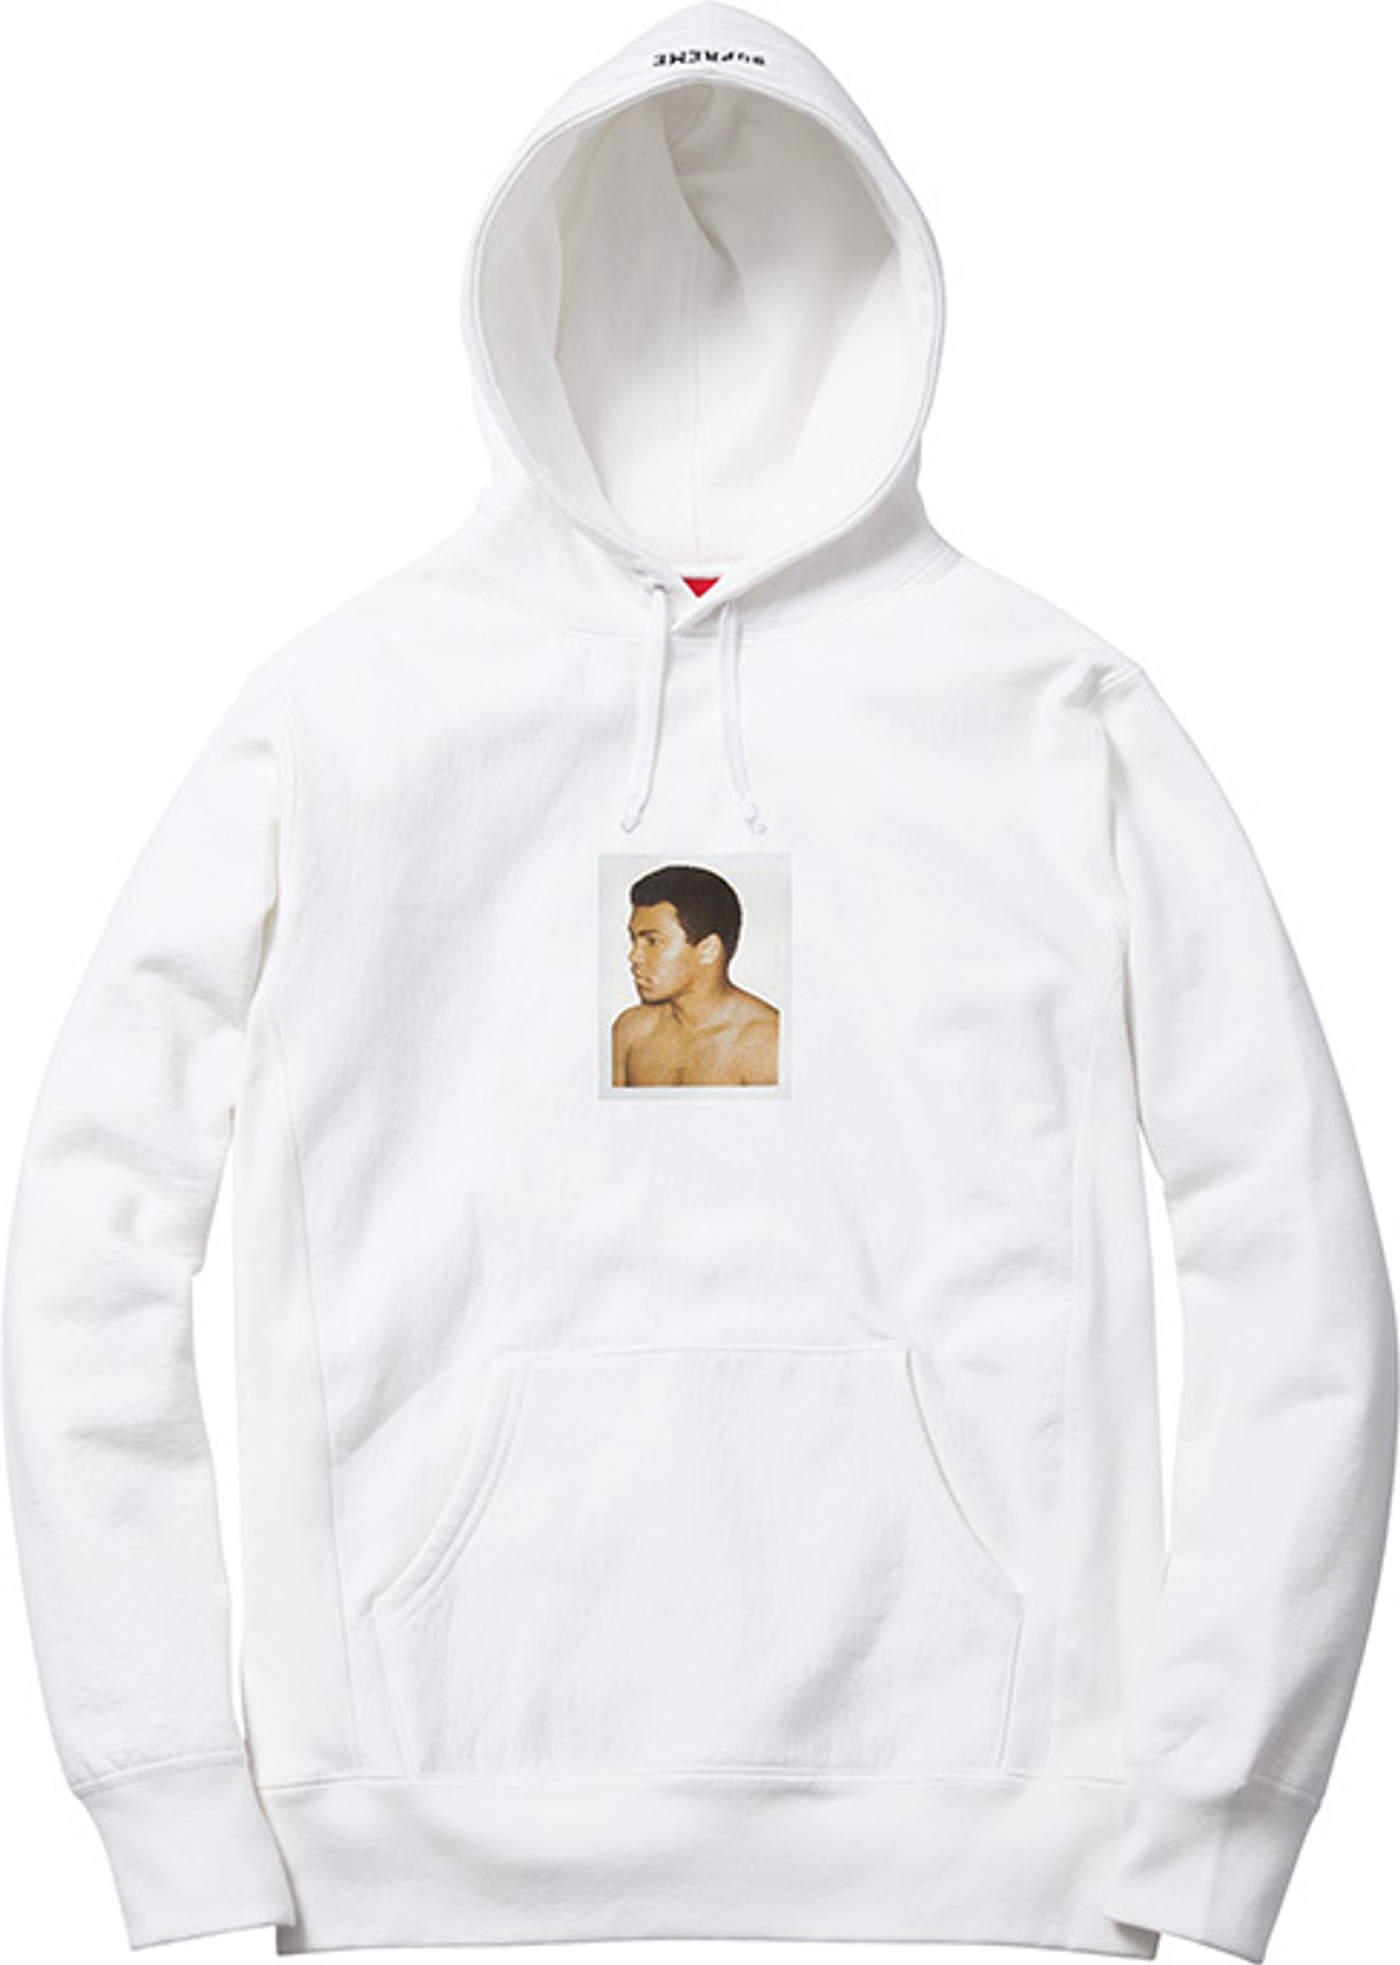 Ali/Warhol Hooded Sweatshirt (2/9)